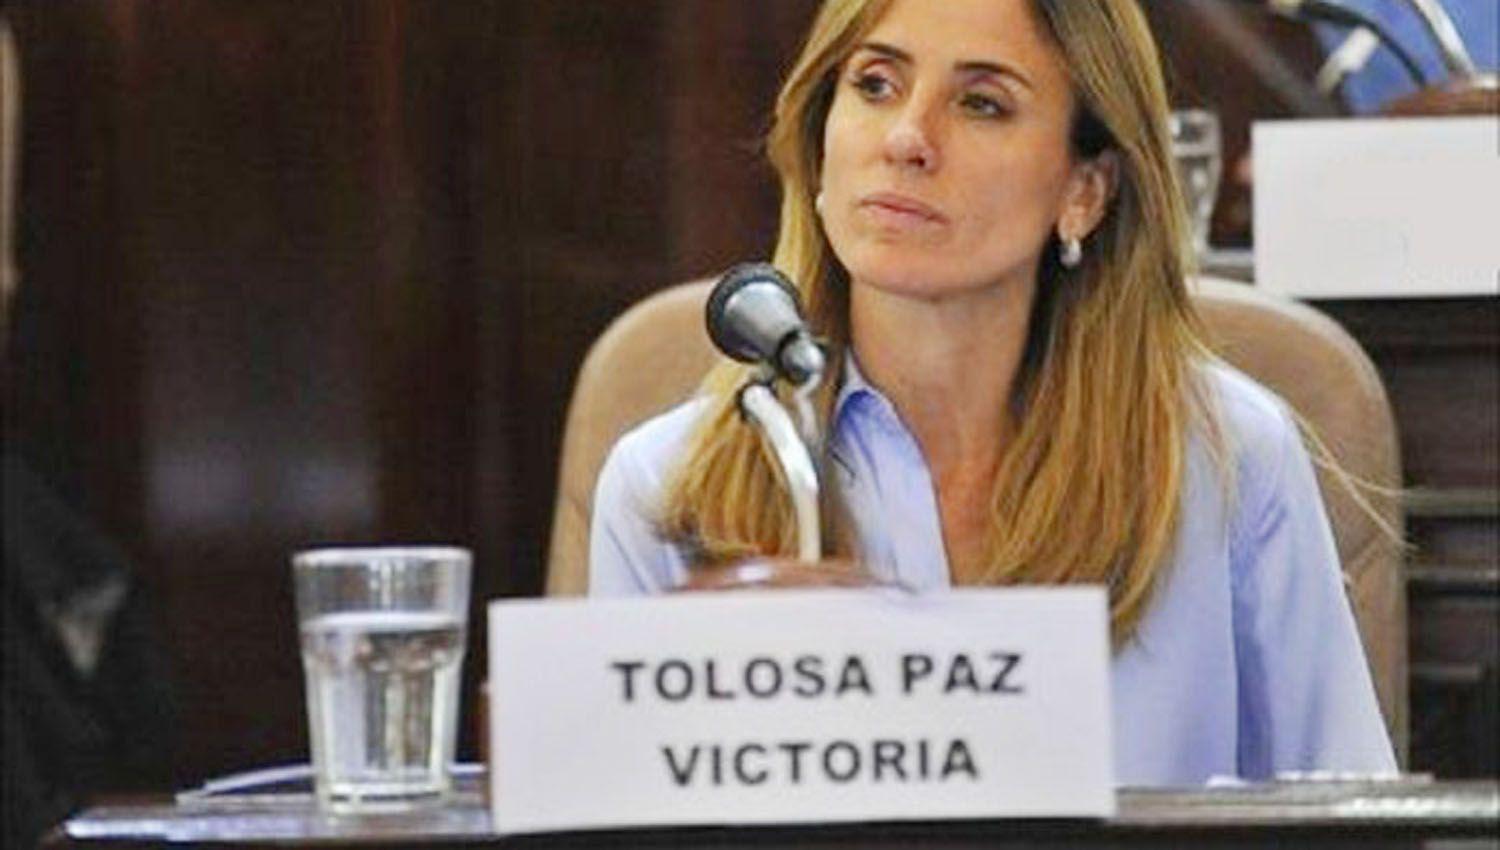 Victoria Tolosa Paz es la nueva ministra de Desarrollo Social